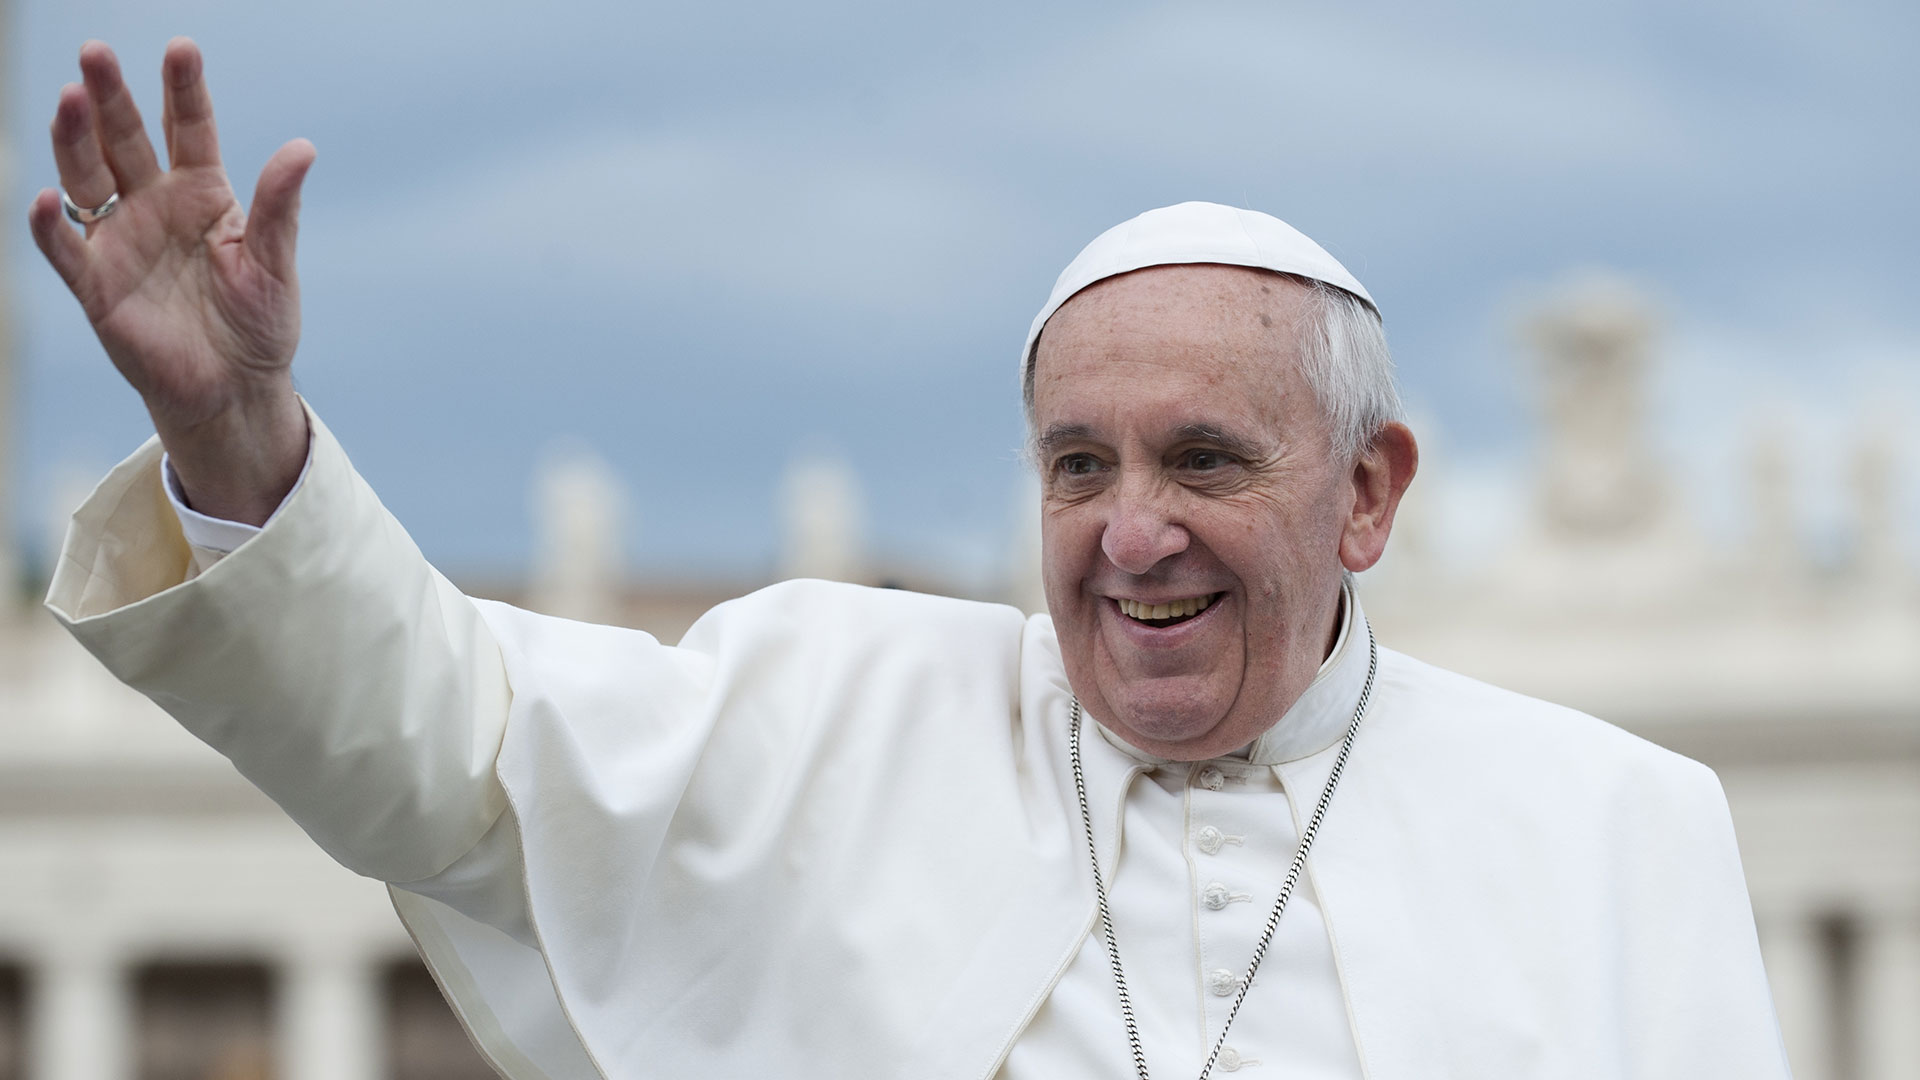 Επίσκεψη του Πάπα στο Φανάρι ανακοινώνει ο Οικουμενικος Πατριάρχης